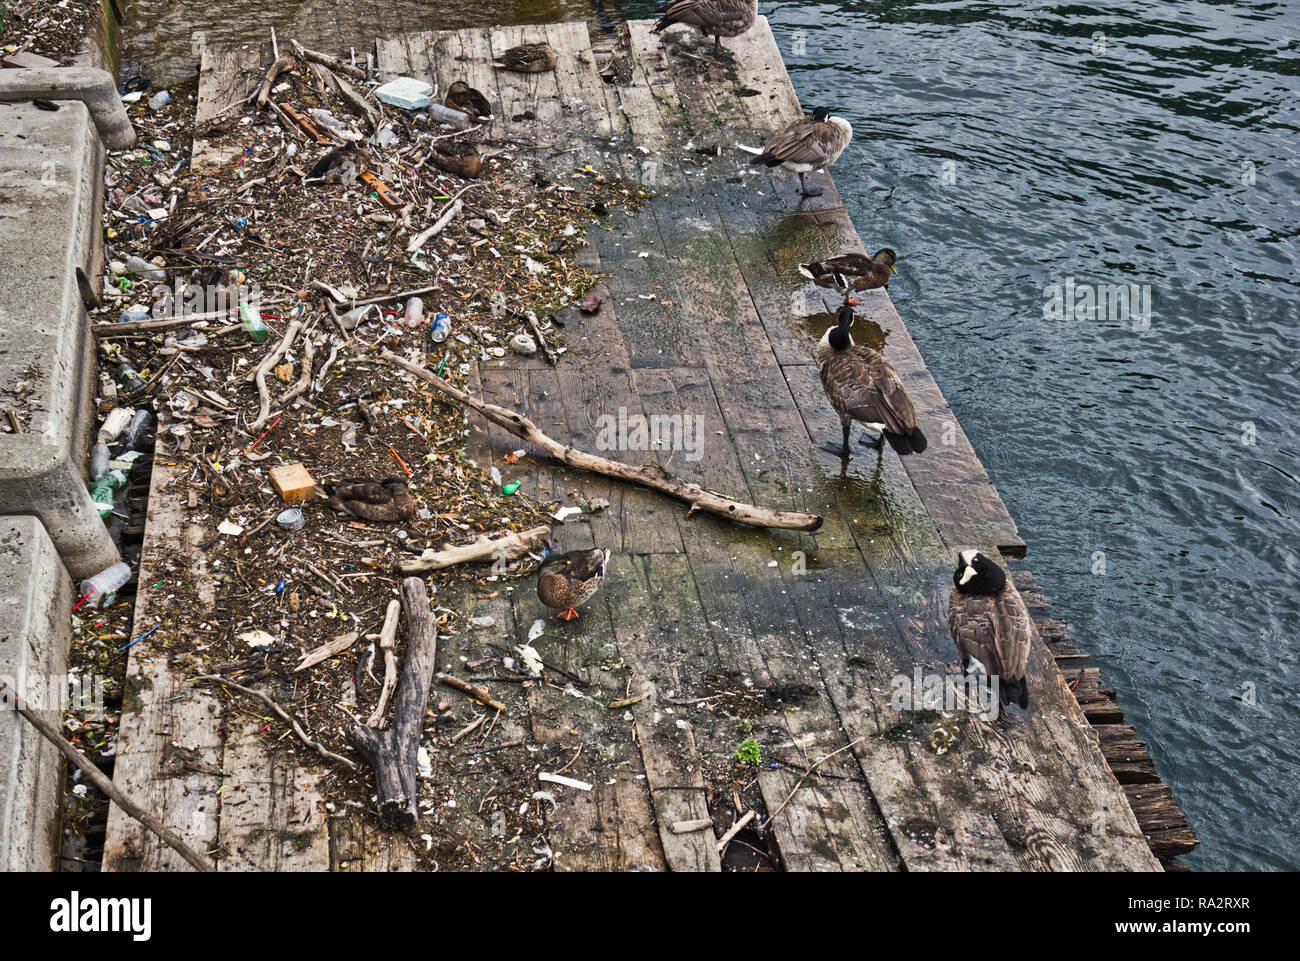 Les oiseaux sur plate-forme en bois parmi les plastiques et autres débris flottants, Toronto, Ontario, Canada Banque D'Images